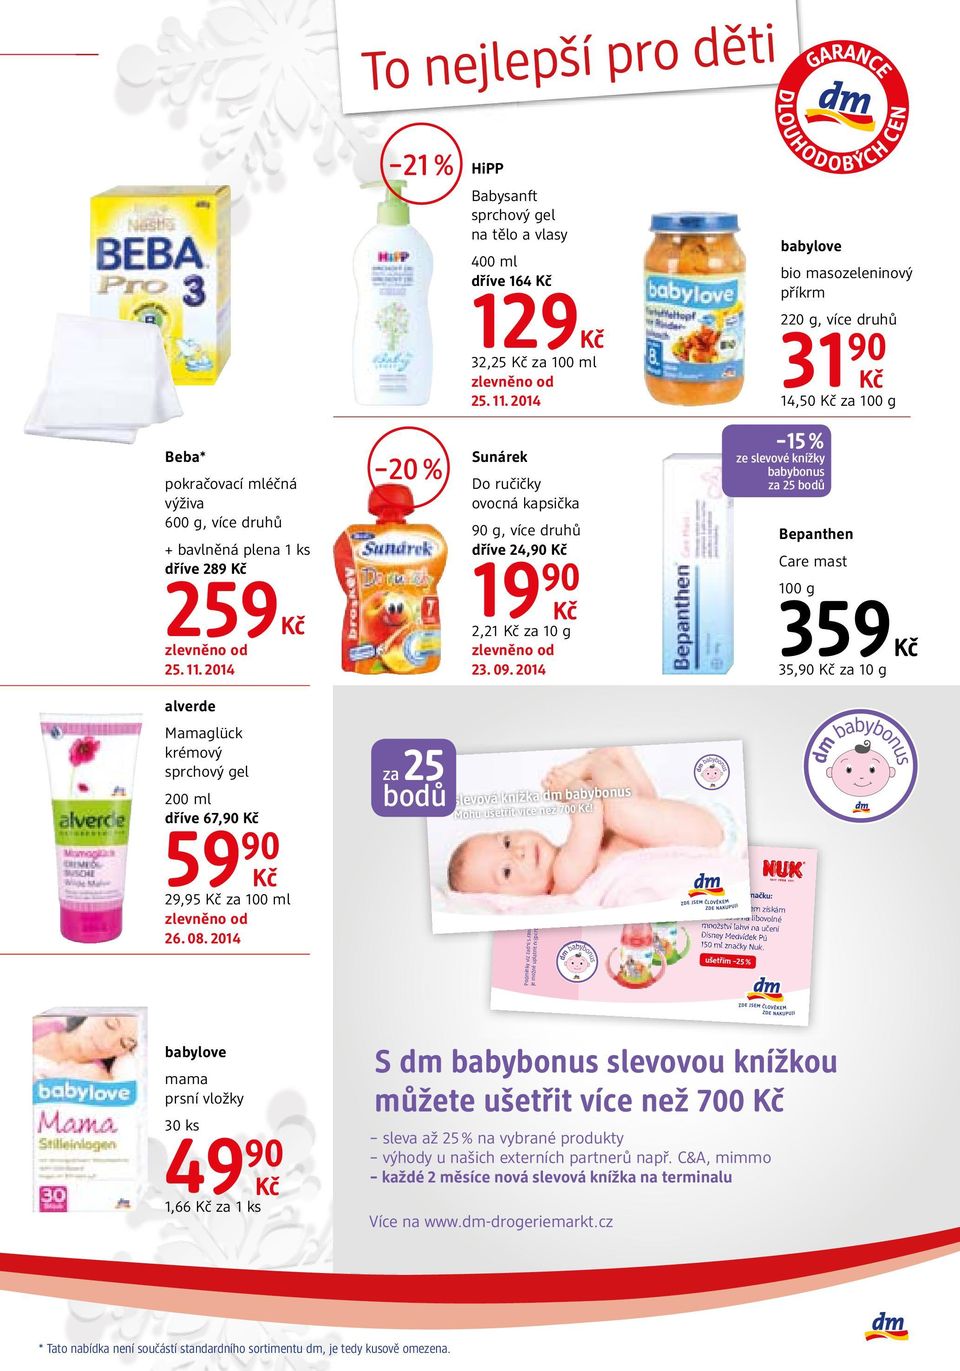 2014 15 % ze slevové knížky babybonus za 25 bodů Bepanthen Care mast 100 g 359 35,90 za 10 g Mamaglück krémový sprchový gel dříve 67,90 www.dm-drogeriemarkt.cz www.facebook.com/dm.